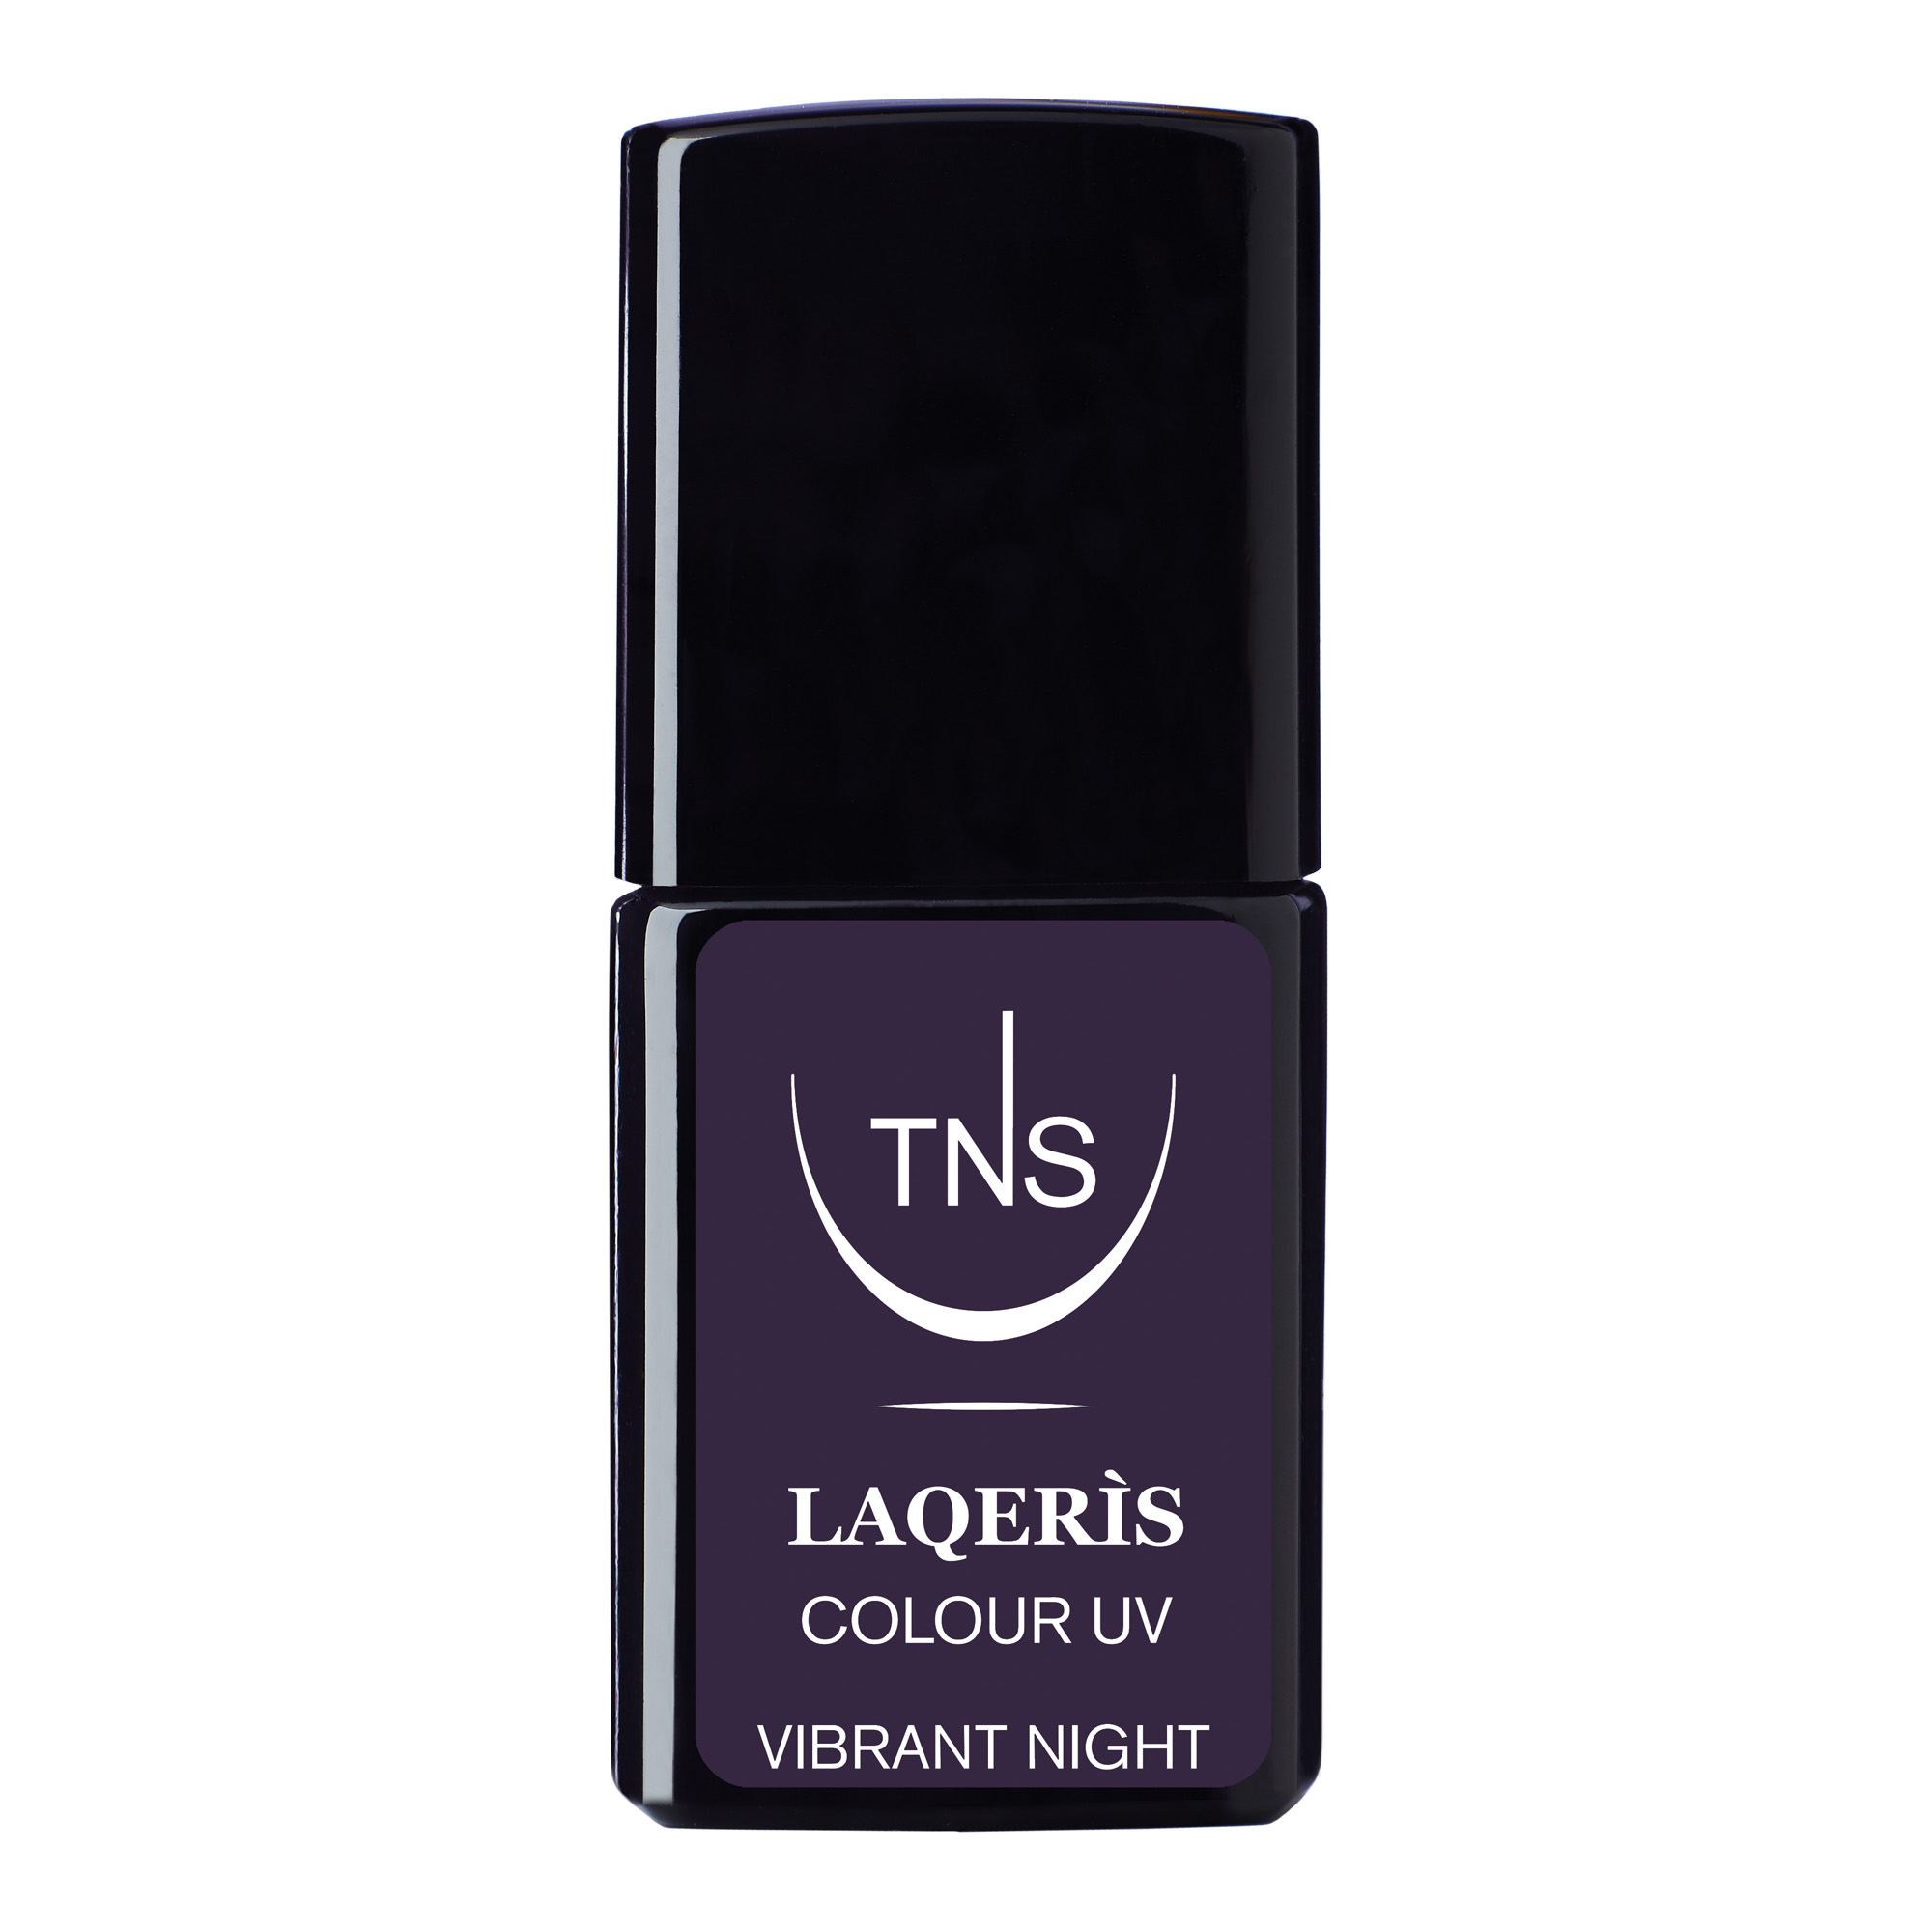 Smalto semipermanente viola scuro Vibrant Night 10 ml Laqerìs TNS